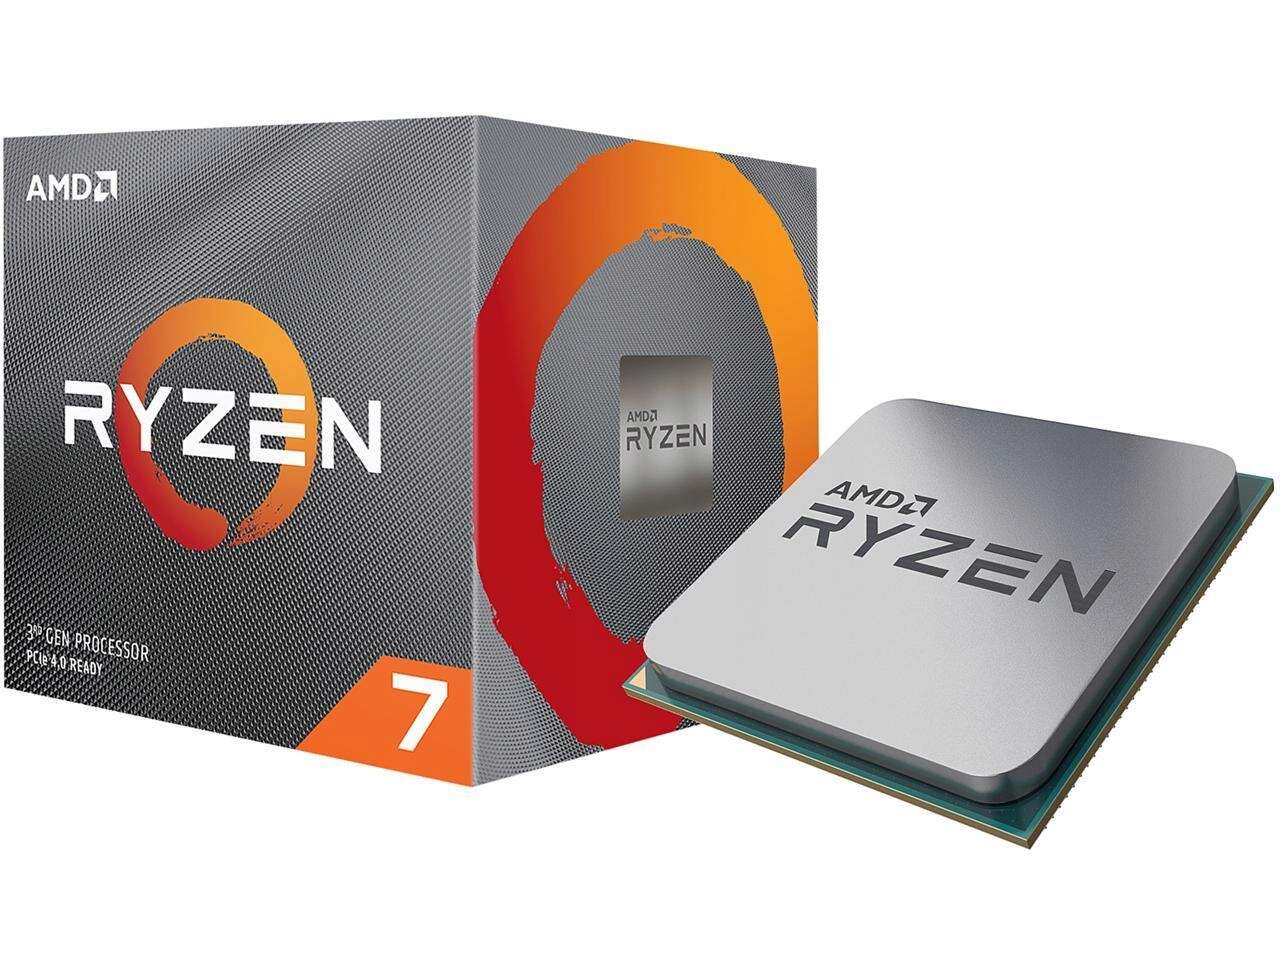 aots AMD Ryzen 7 3800XT, benchmark AMD Ryzen 7 3800XT